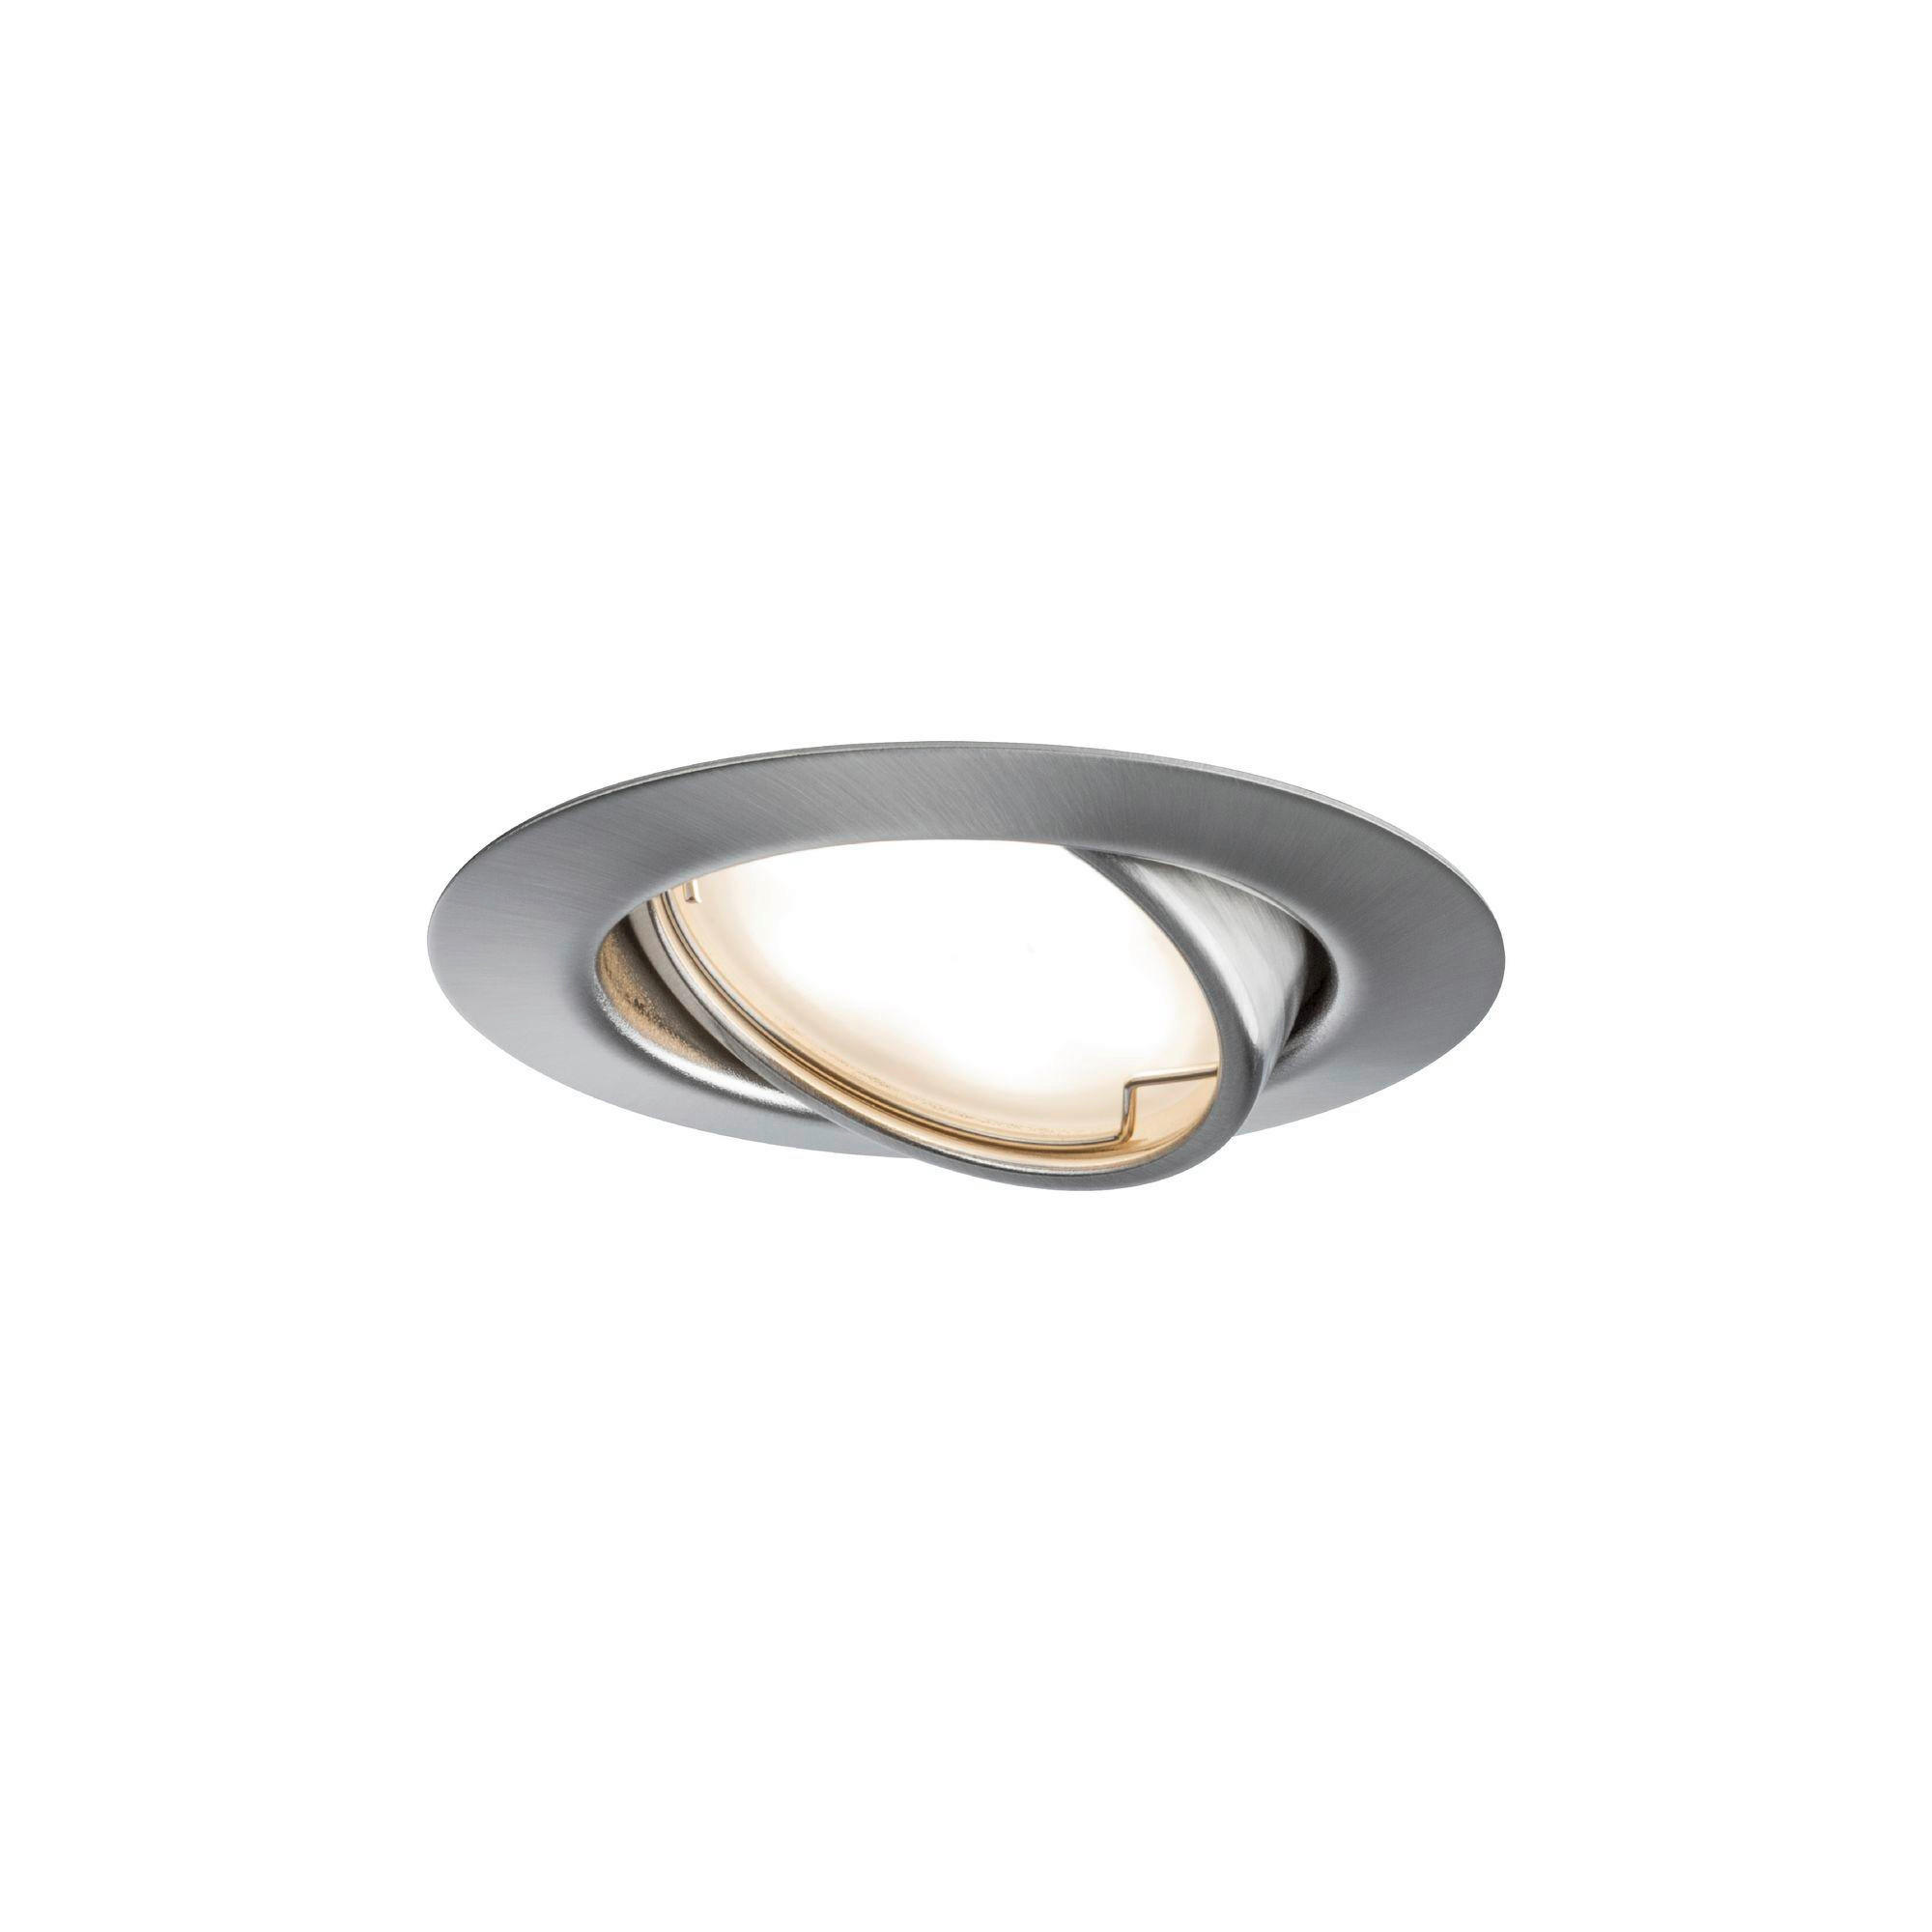 LED-SPOT  - Edelstahlfarben, Design, Metall (9cm) - Paulmann